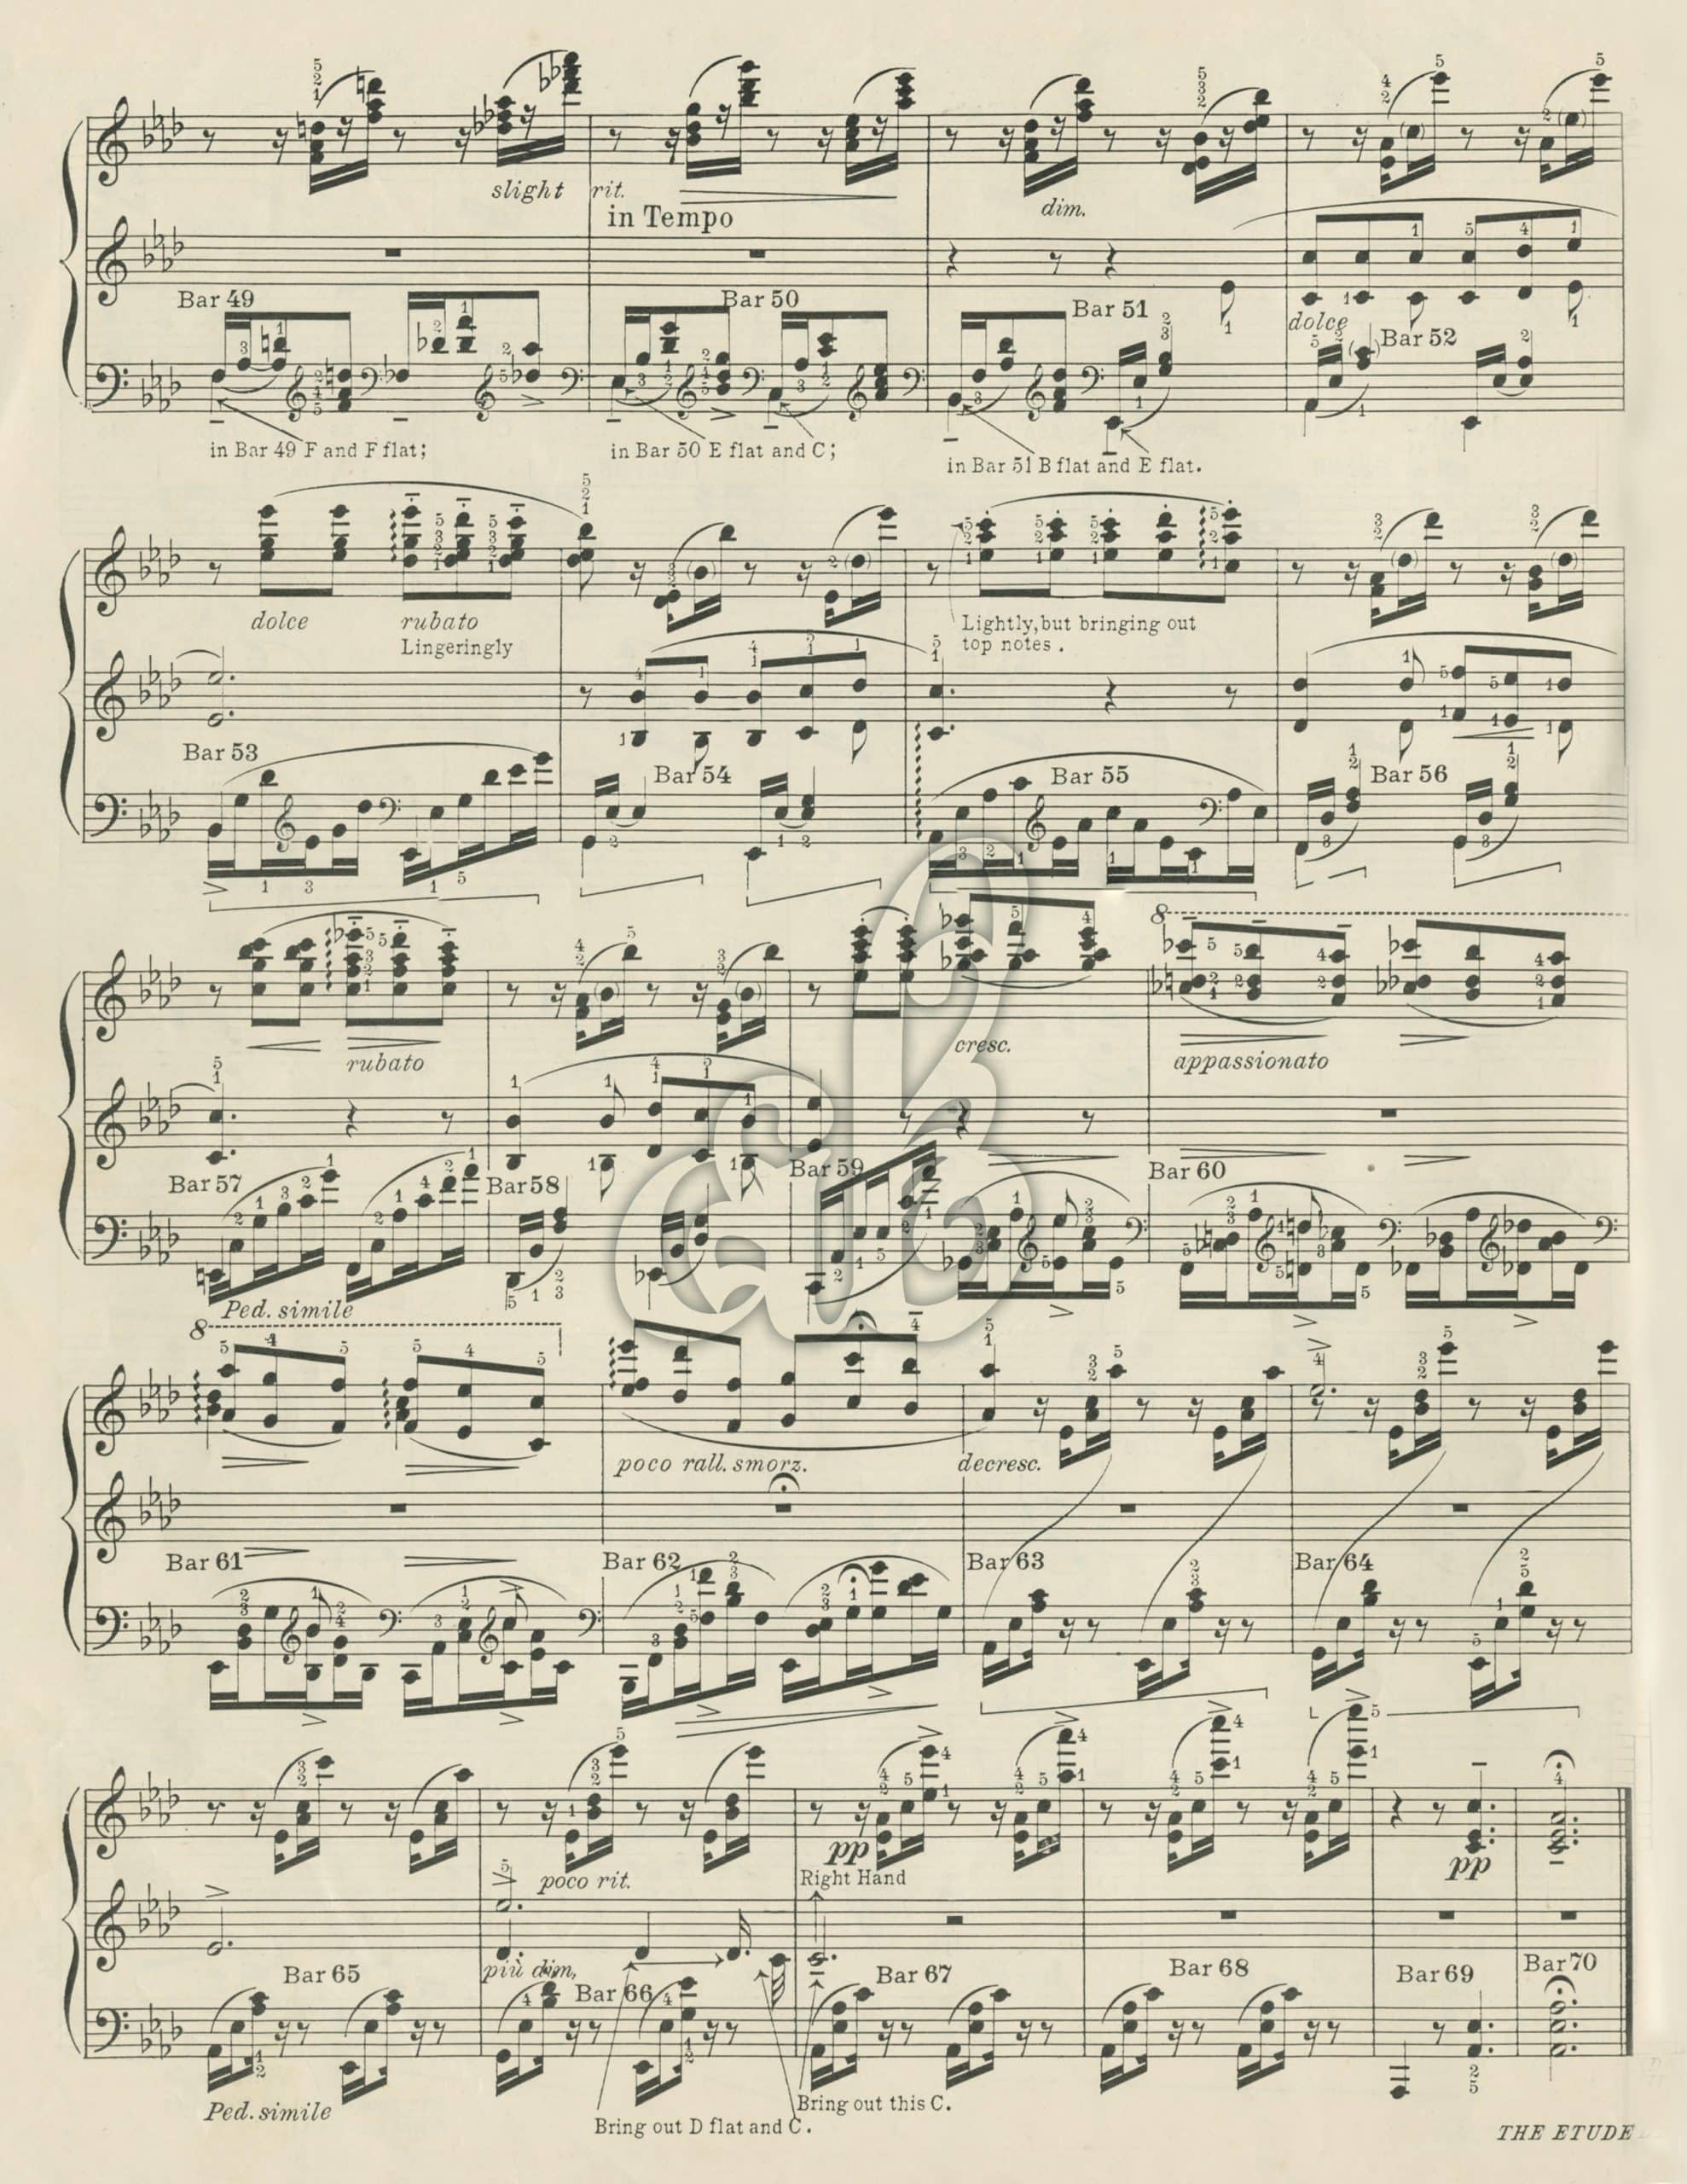 music sheet paper